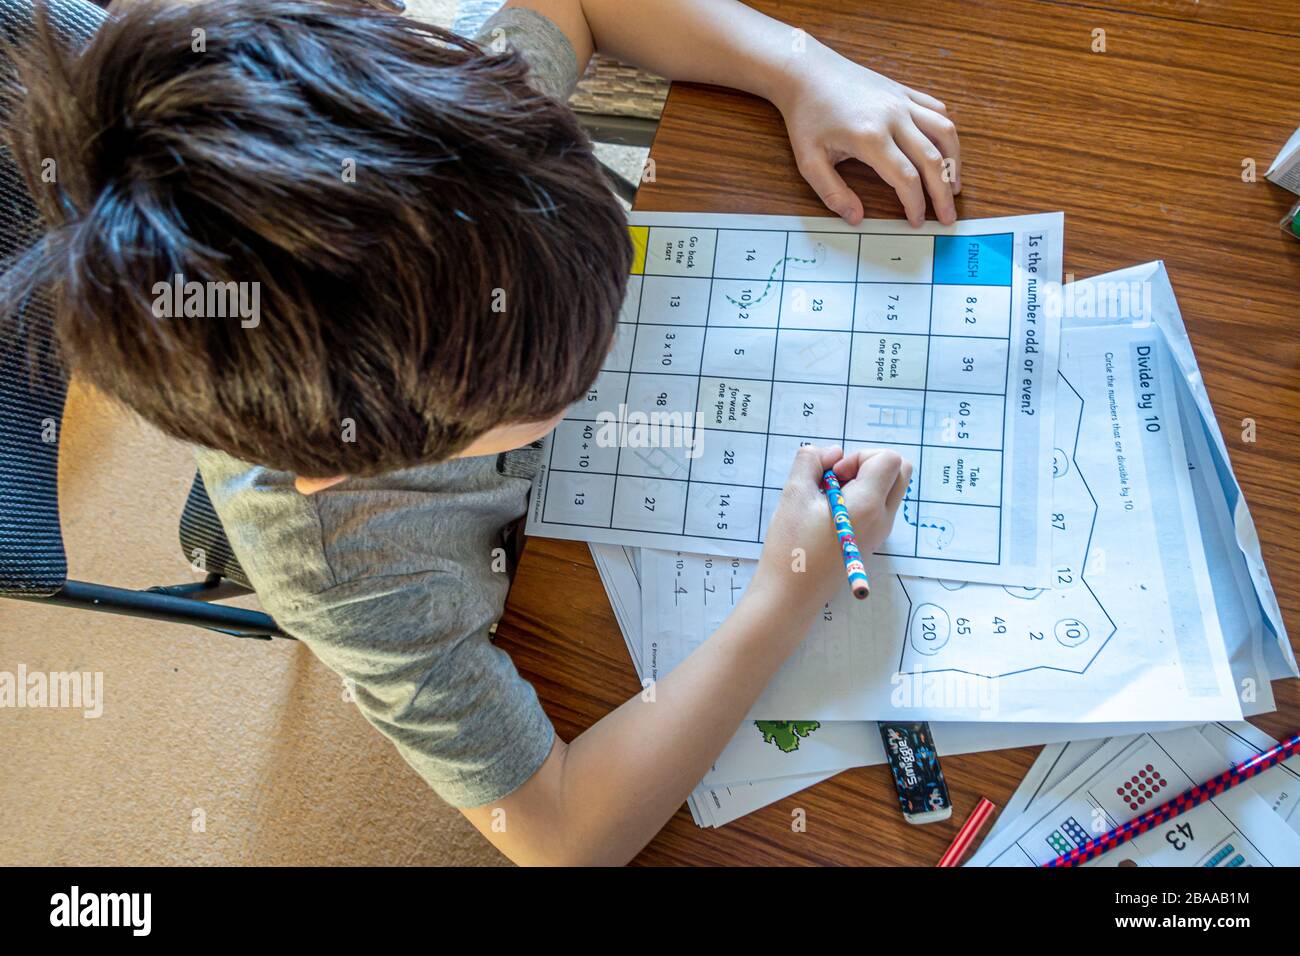 Un jeune garçon travaillant sur des énigmes mathématiques dans le cadre d'un jeu thématique de mathématiques. Cela fait partie de l'apprentissage à domicile à la suite de la pandémie de coronavirus. Banque D'Images